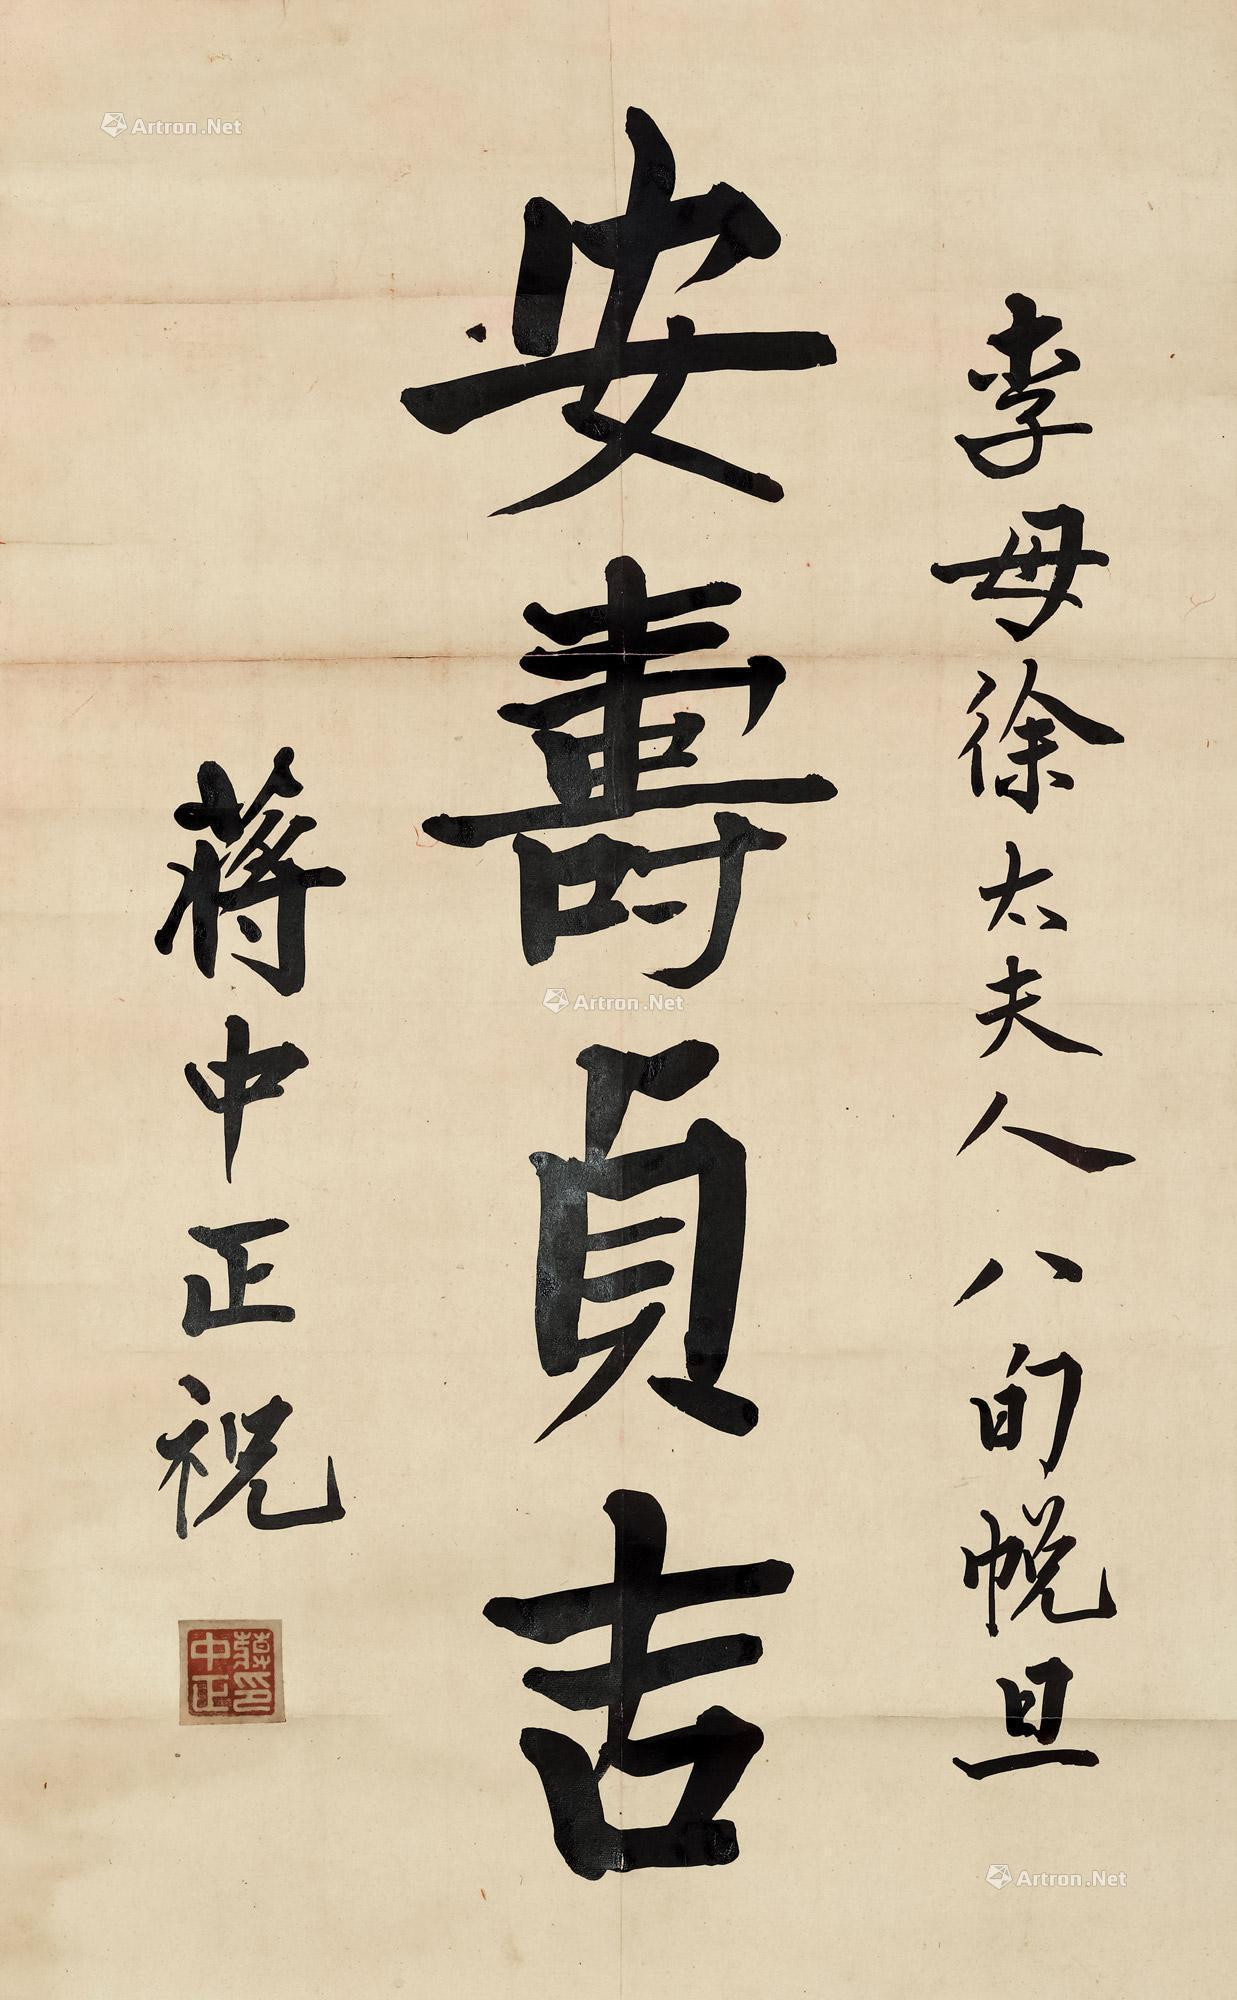 Calligraphy“An Shou Zhen Ji”by Chiang Kai-shek